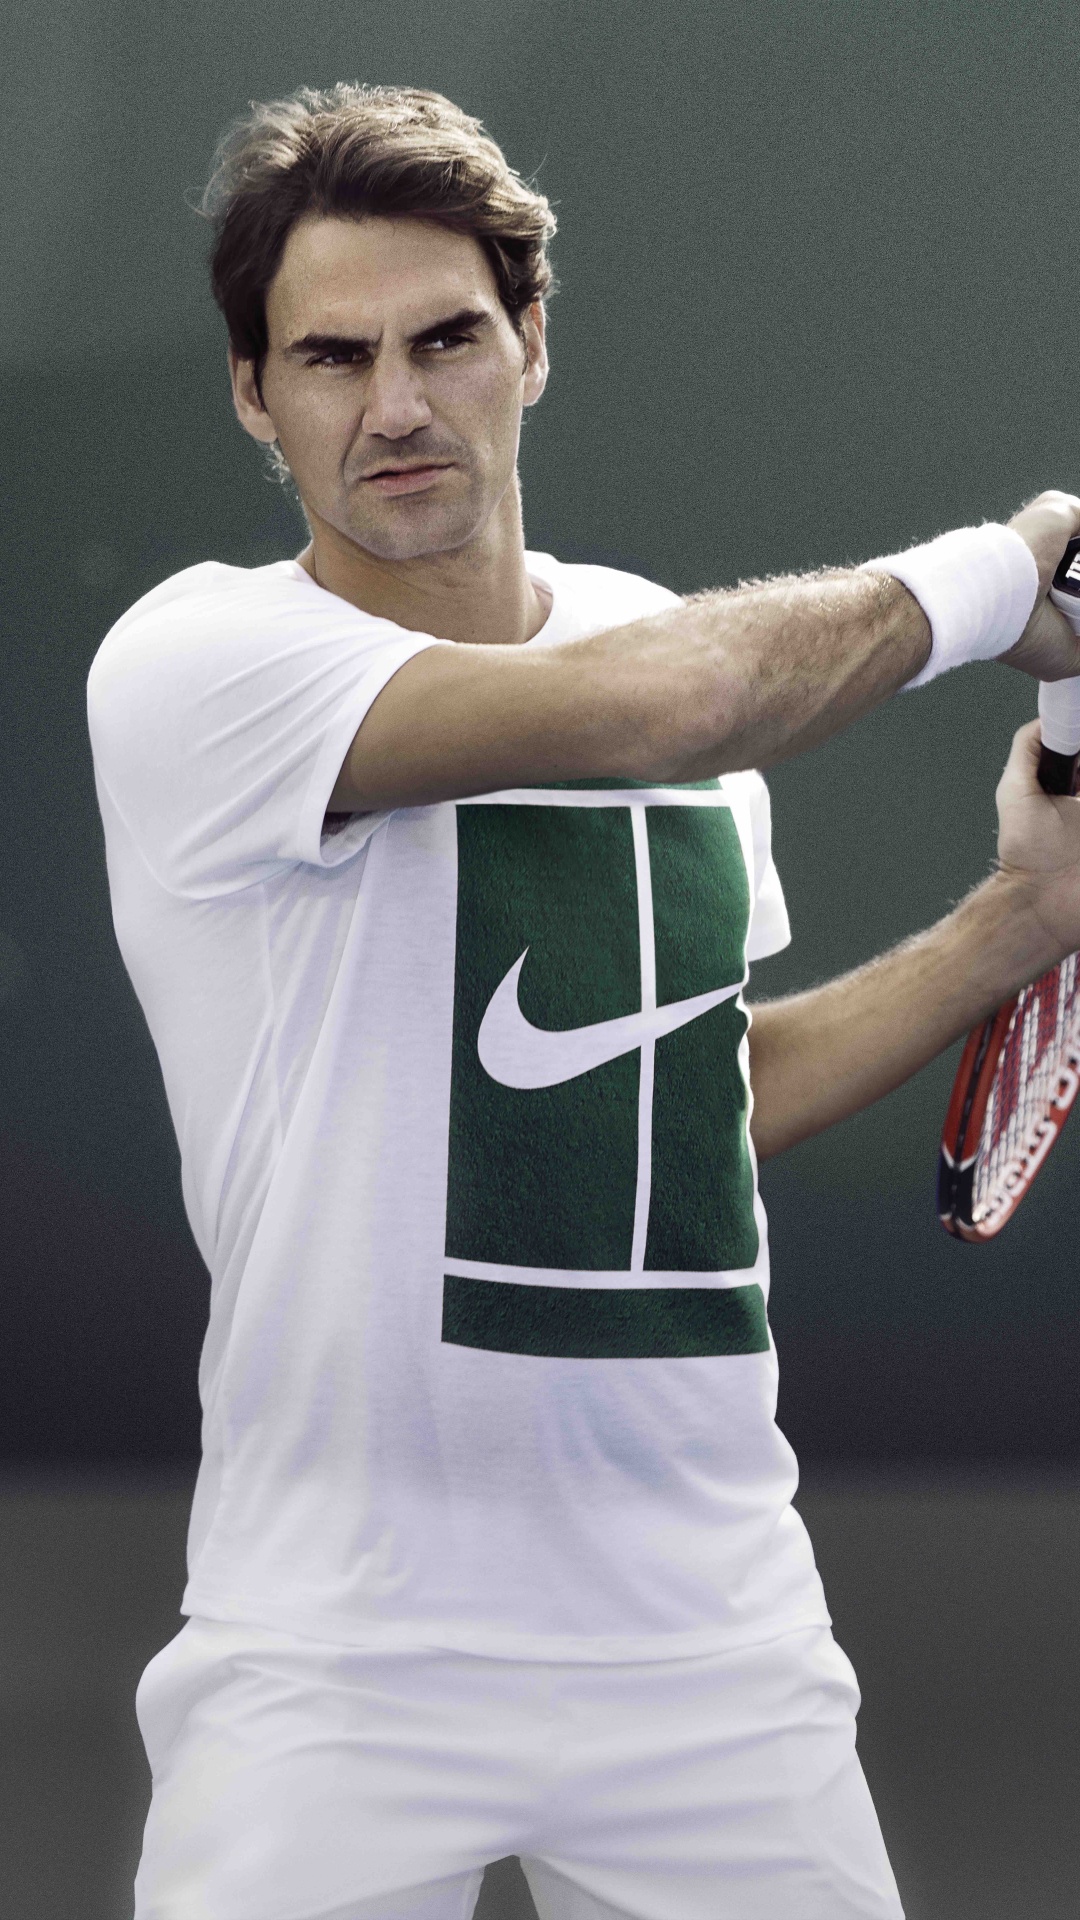 Homme en Chemise Jersey Nike Vert et Blanc Tenant Une Raquette de Tennis Rouge et Blanc. Wallpaper in 1080x1920 Resolution